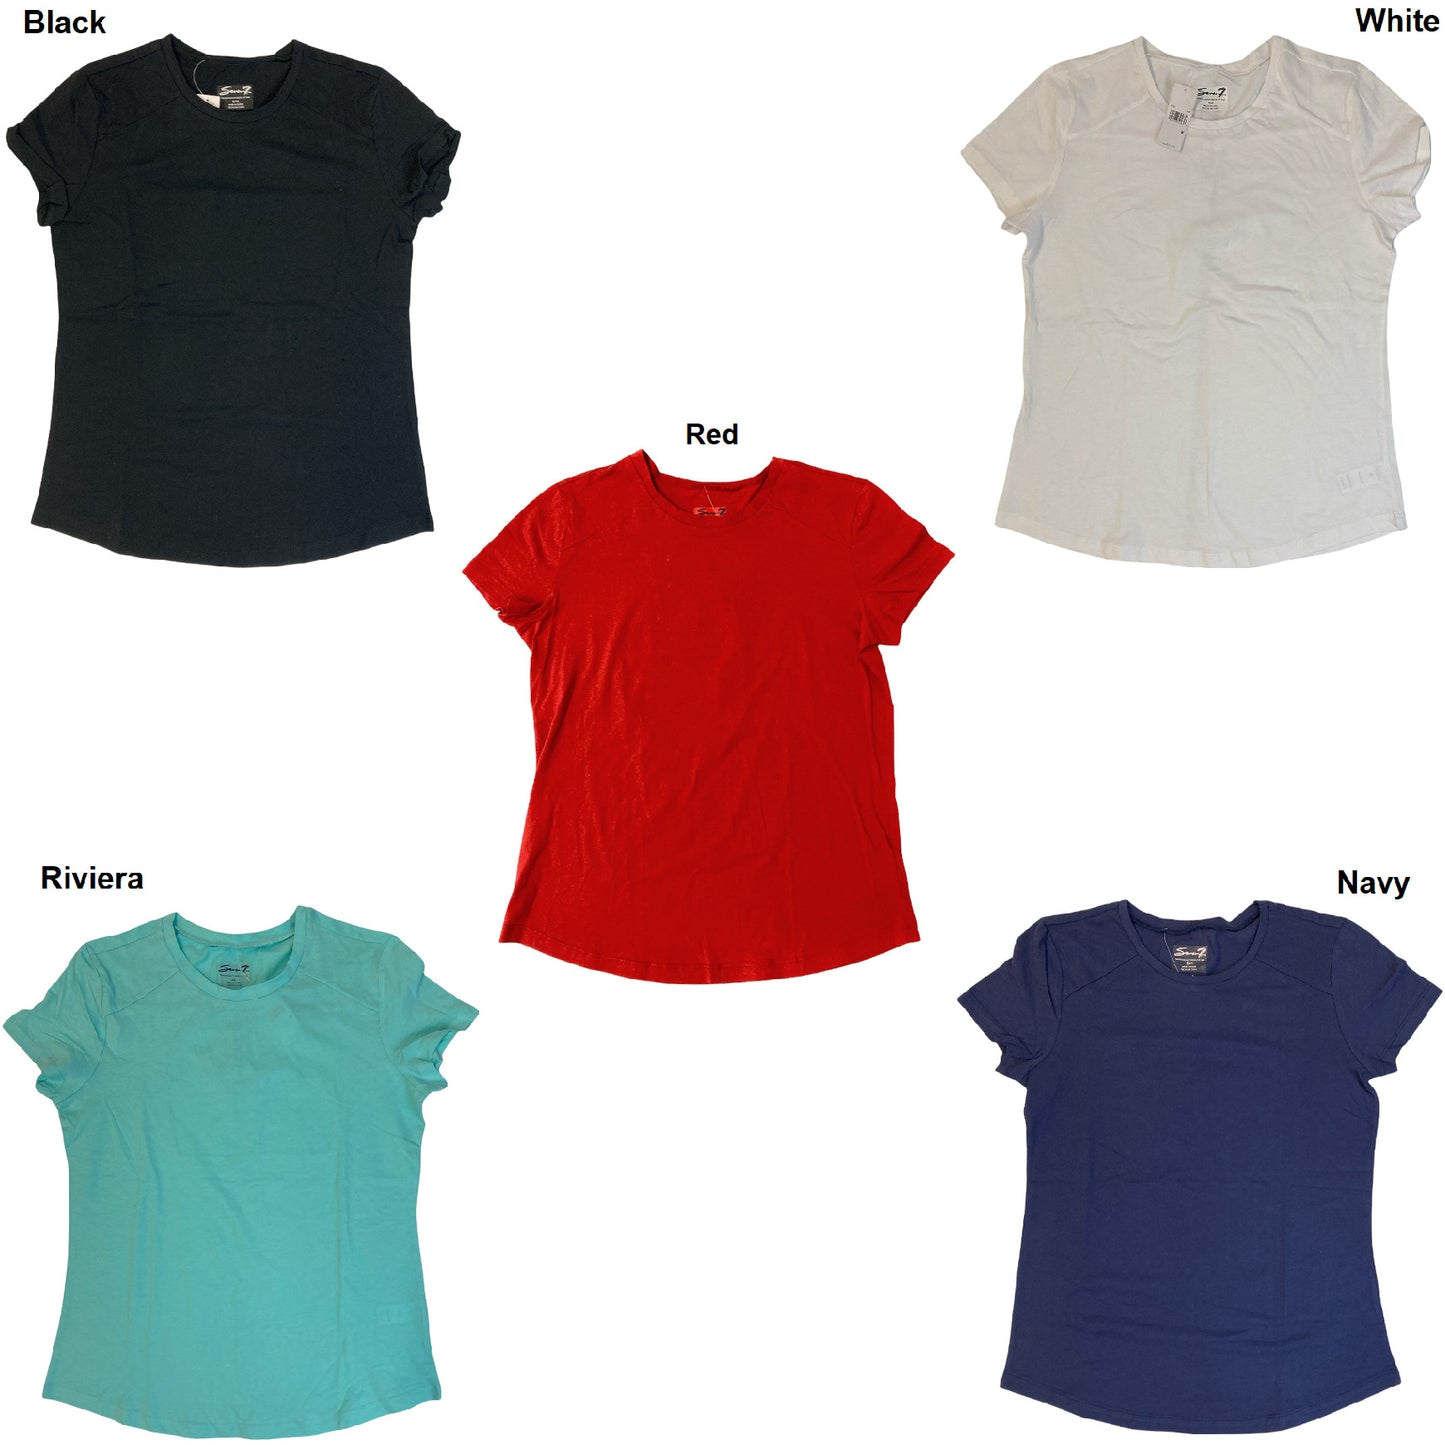 Seven7 Women's Cotton Crew Neck Short Sleeve T-Shirt